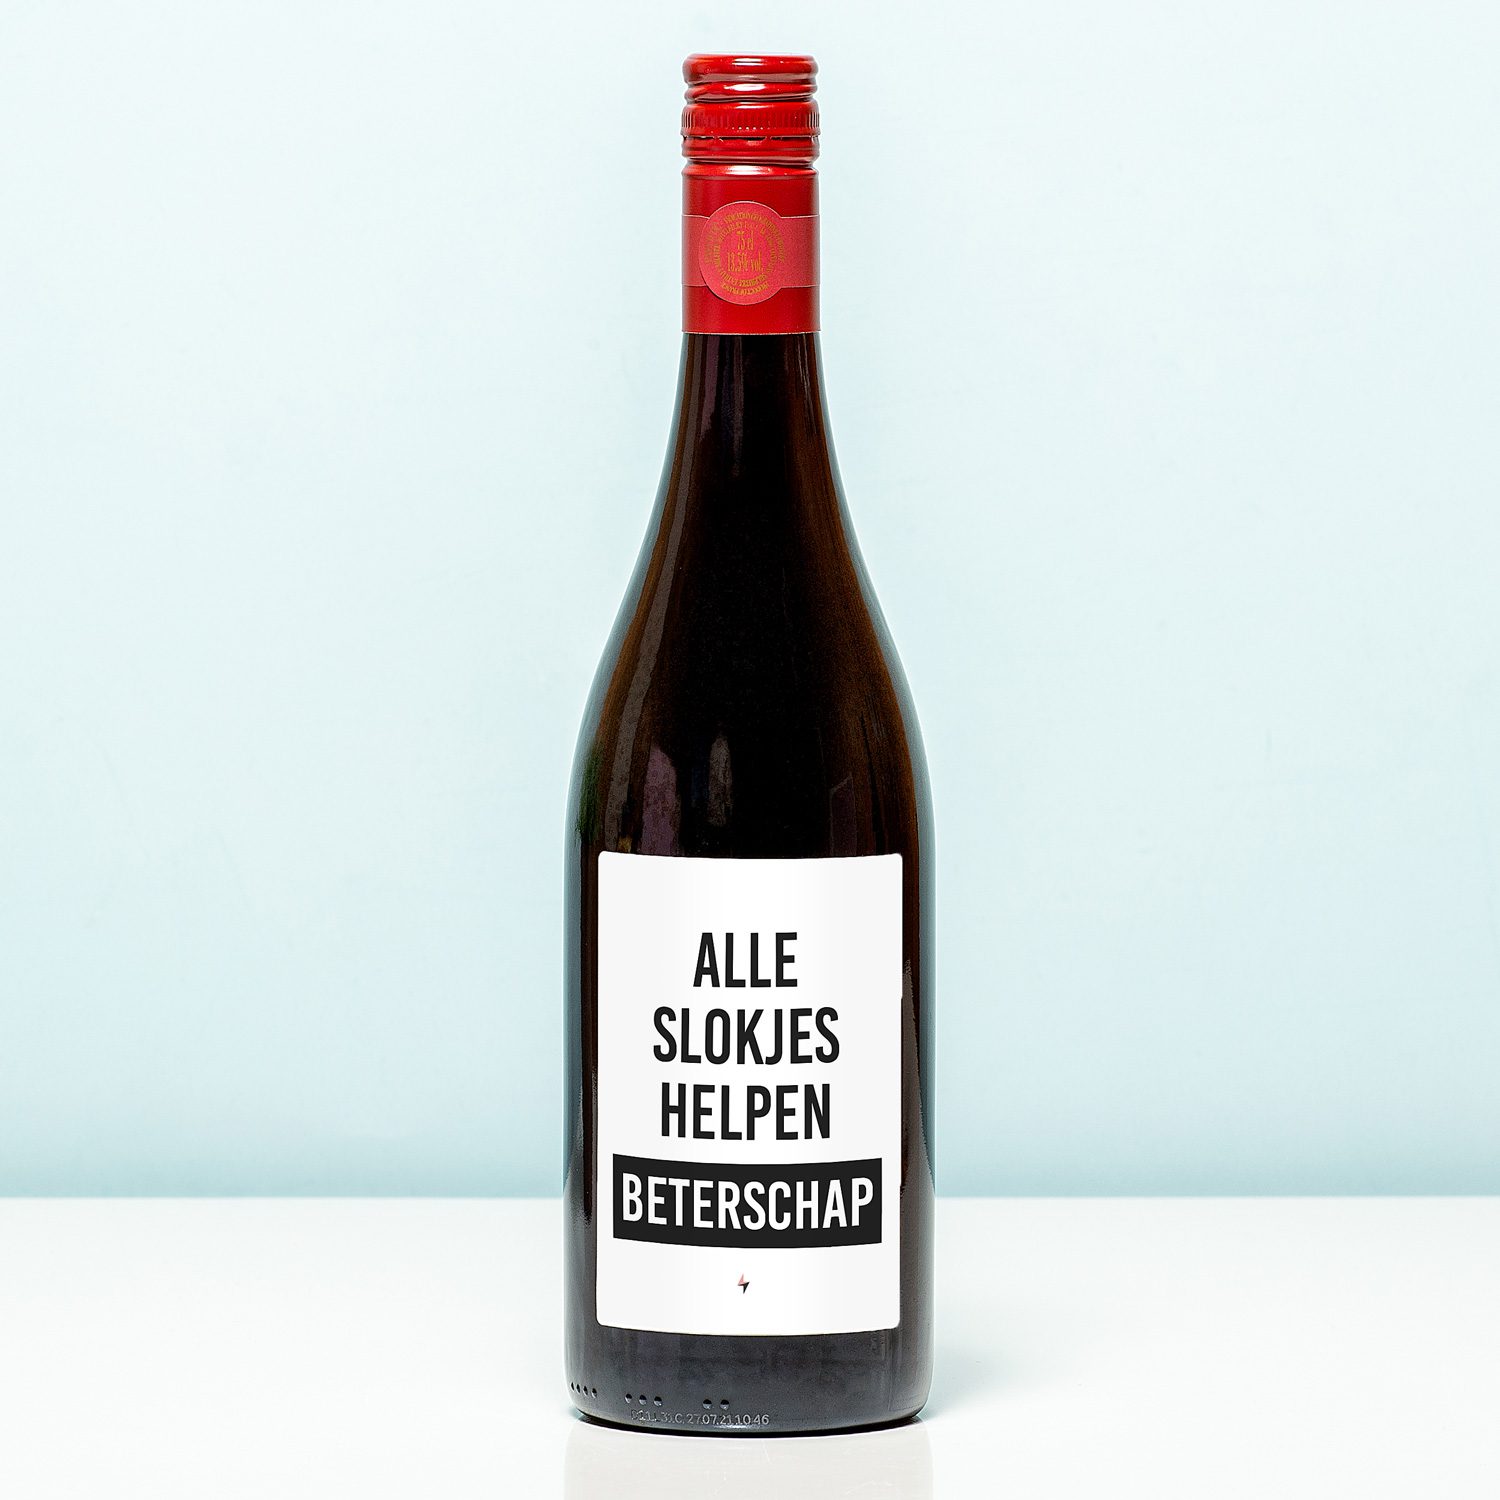 Wijnfles Beterschap Alle Slokjes Helpen - Rood (Merlot)